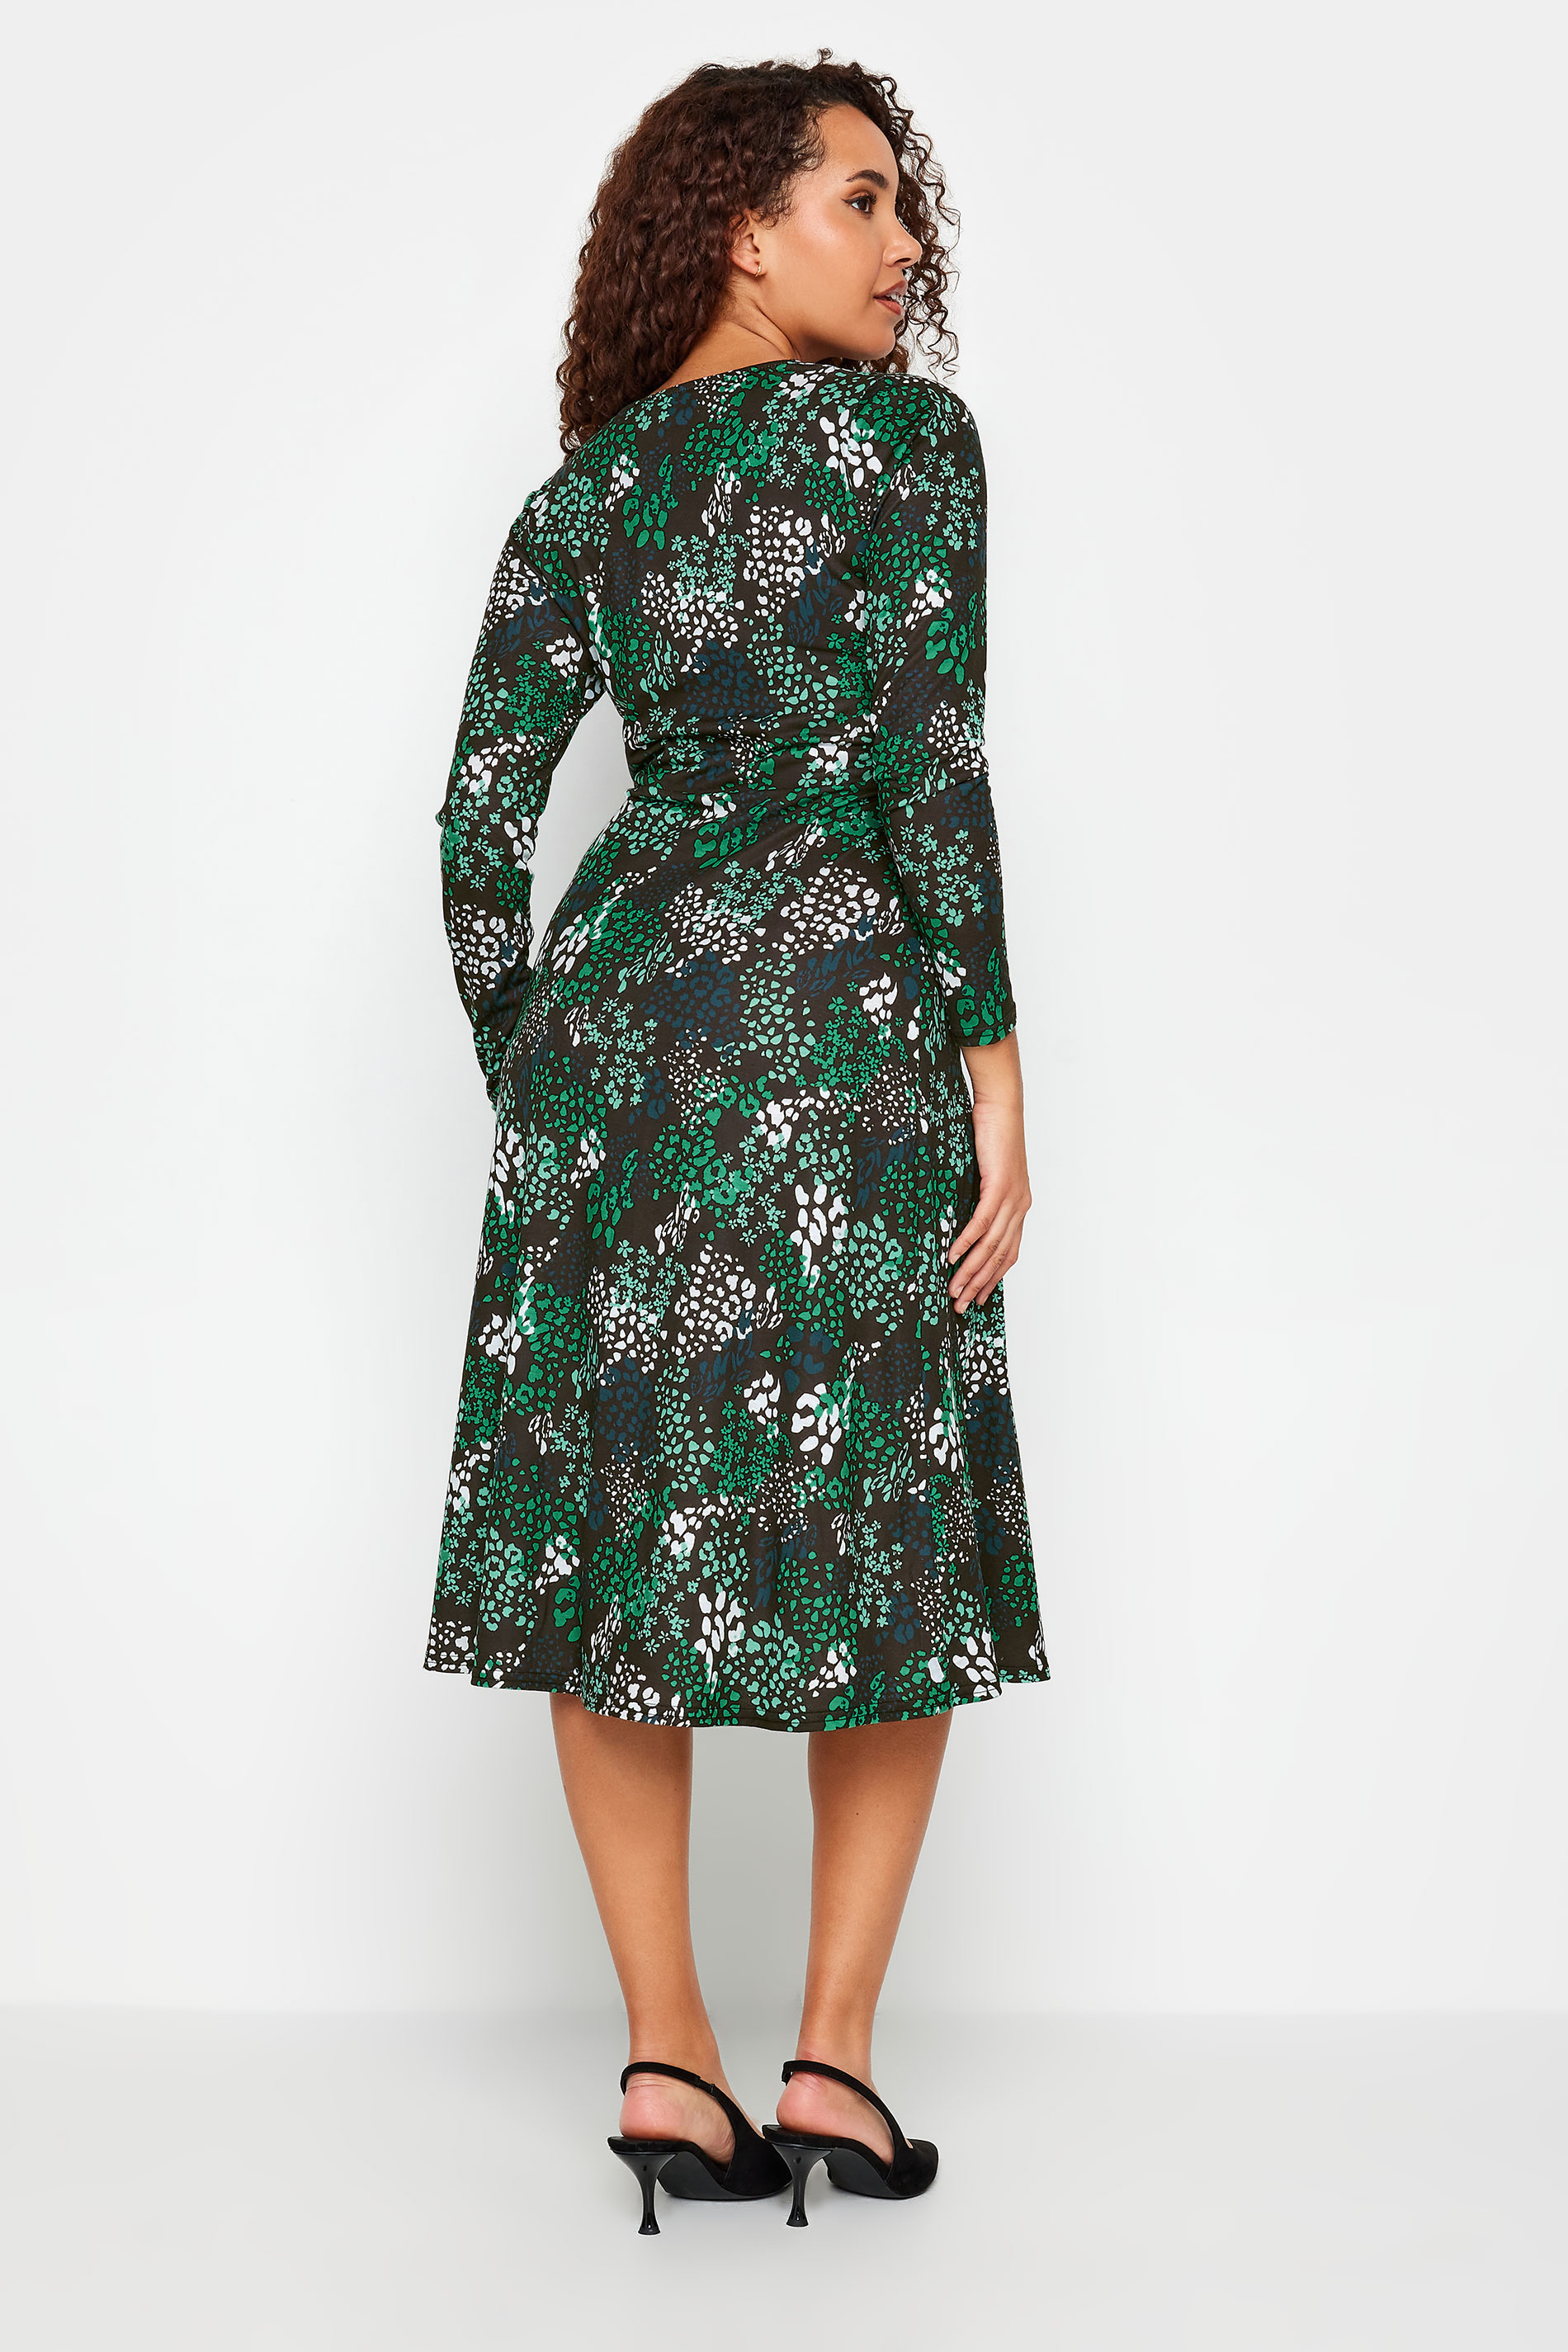 M&Co Black & Green Animal Print Wrap Dress | M&Co 3